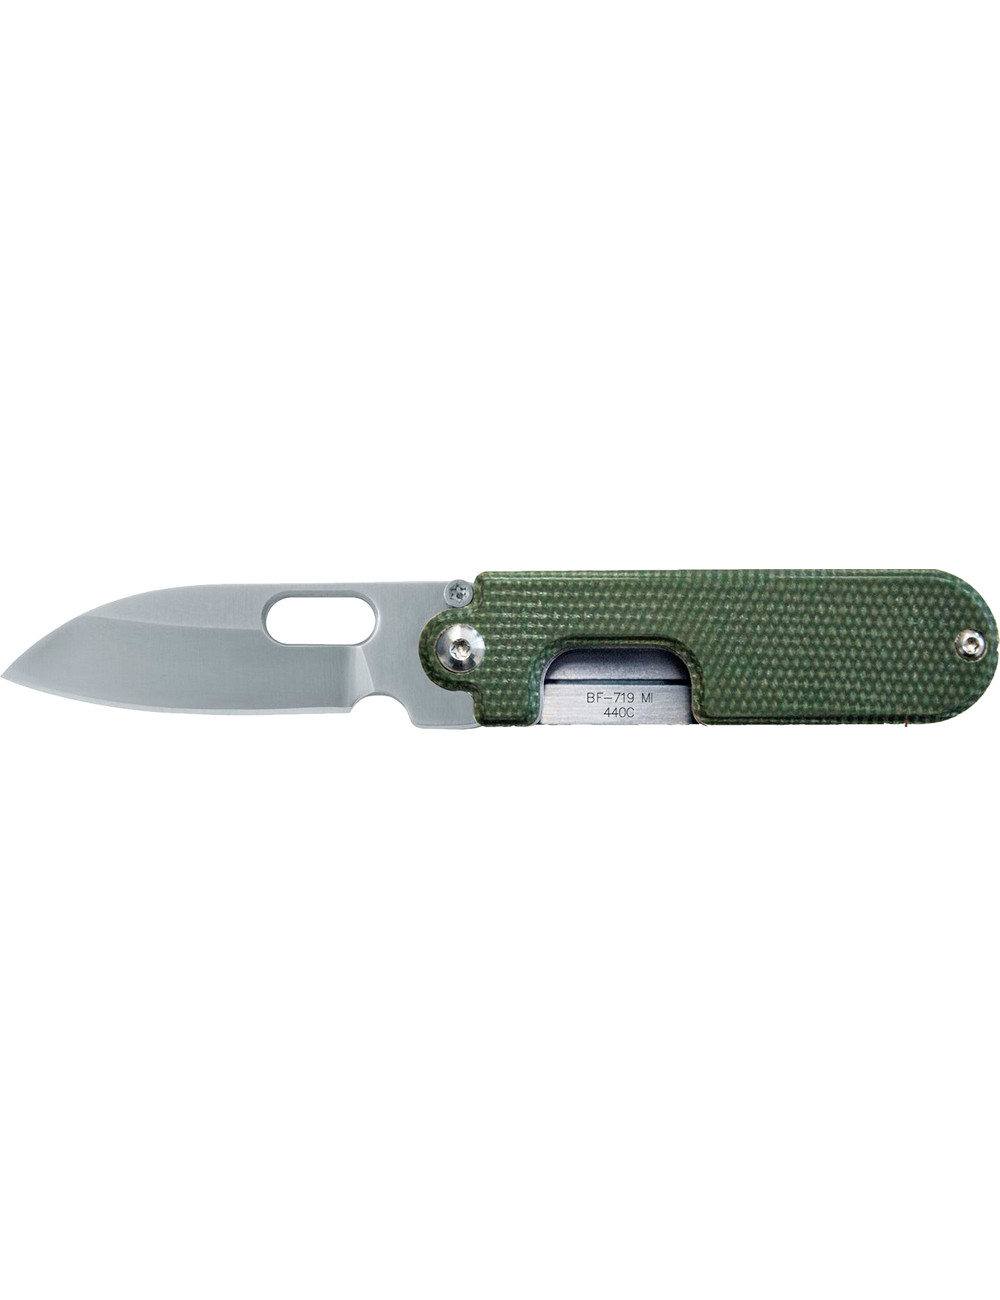 BLACKFOX BF-719MIN Pocket Knife Bean Gen 2 NATURAL CANVAS